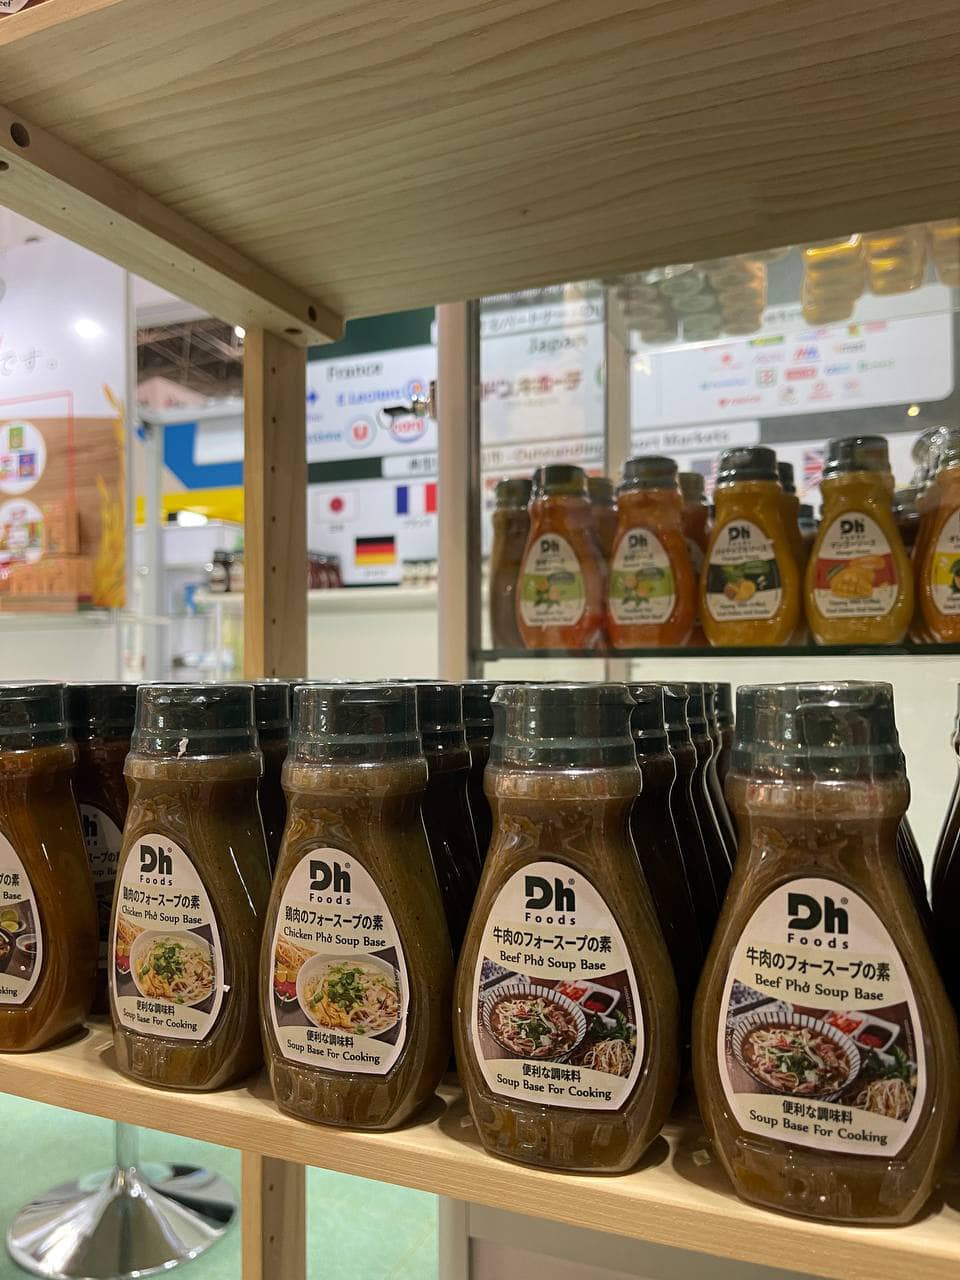 Sau triển lãm Foodex Japan mới diễn ra đầu tháng 3. Công ty cũng đang được Aeon Hong Kong, Aeon Malaysia liên hệ để tìm hiểu các mặt hàng Dh Foods cho nhãn hàng riêng Topvalu các nước này.